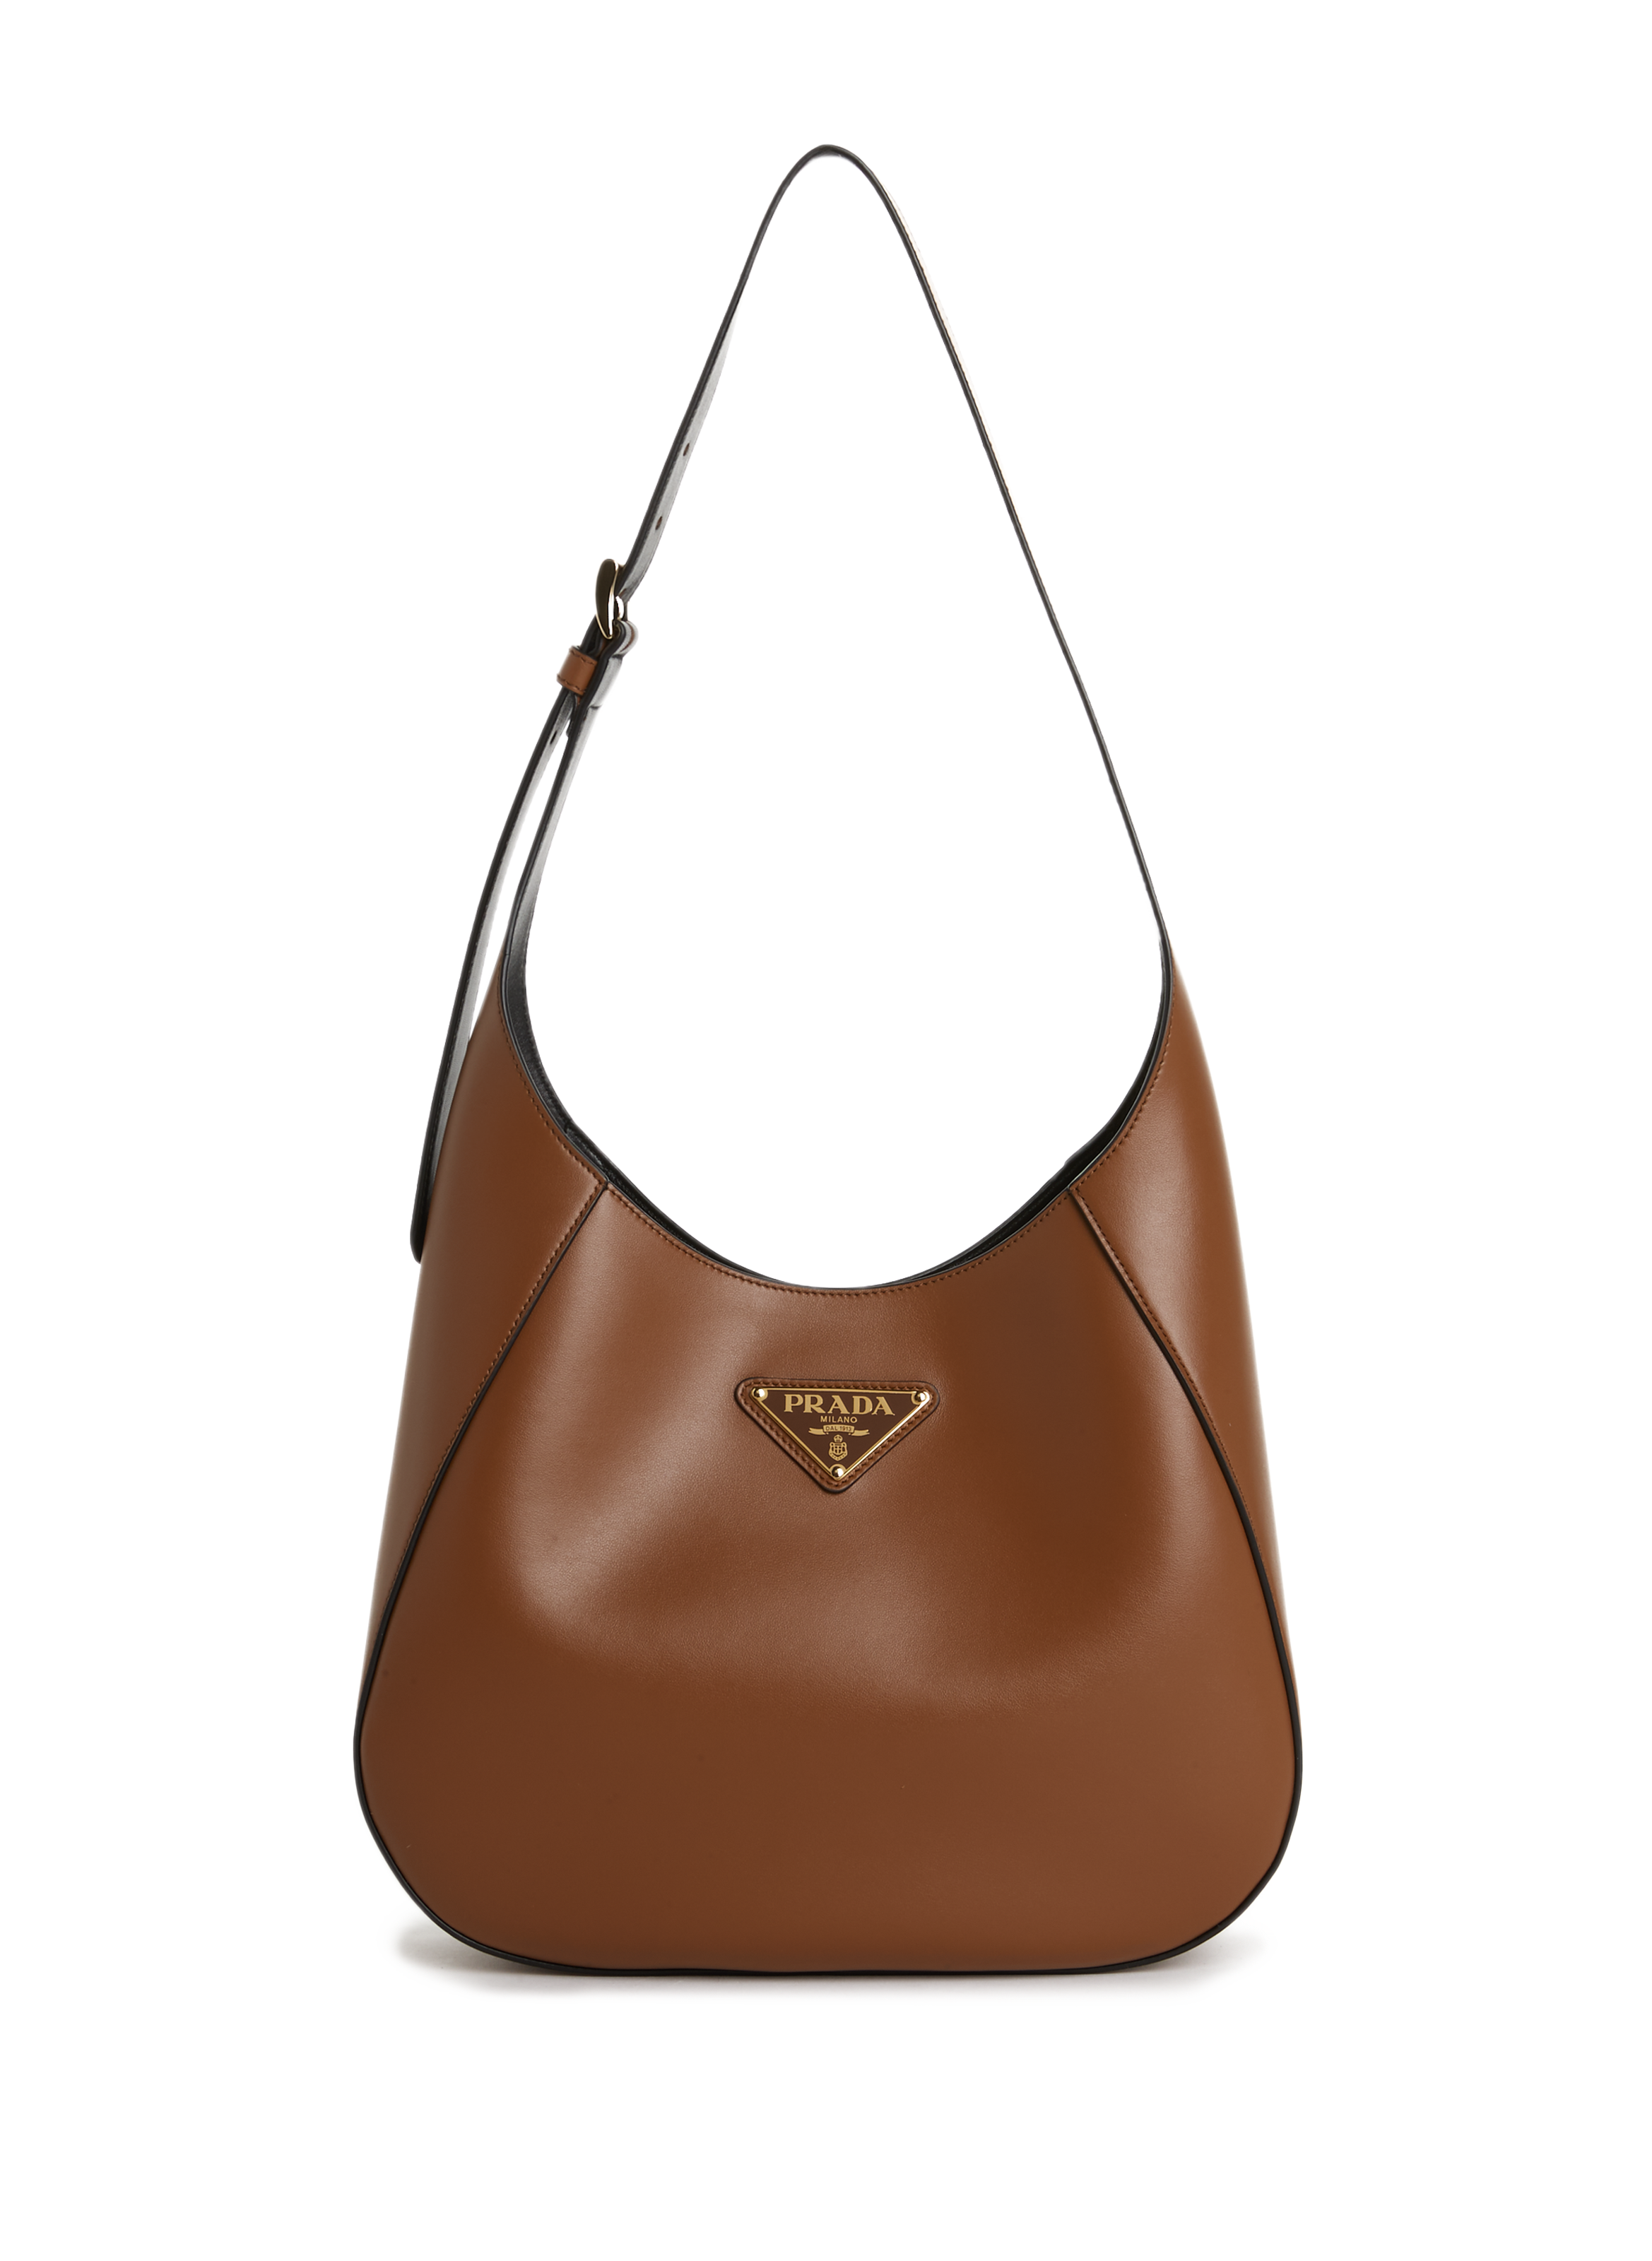 Prada Women's Bags | OTTODISANPIETRO